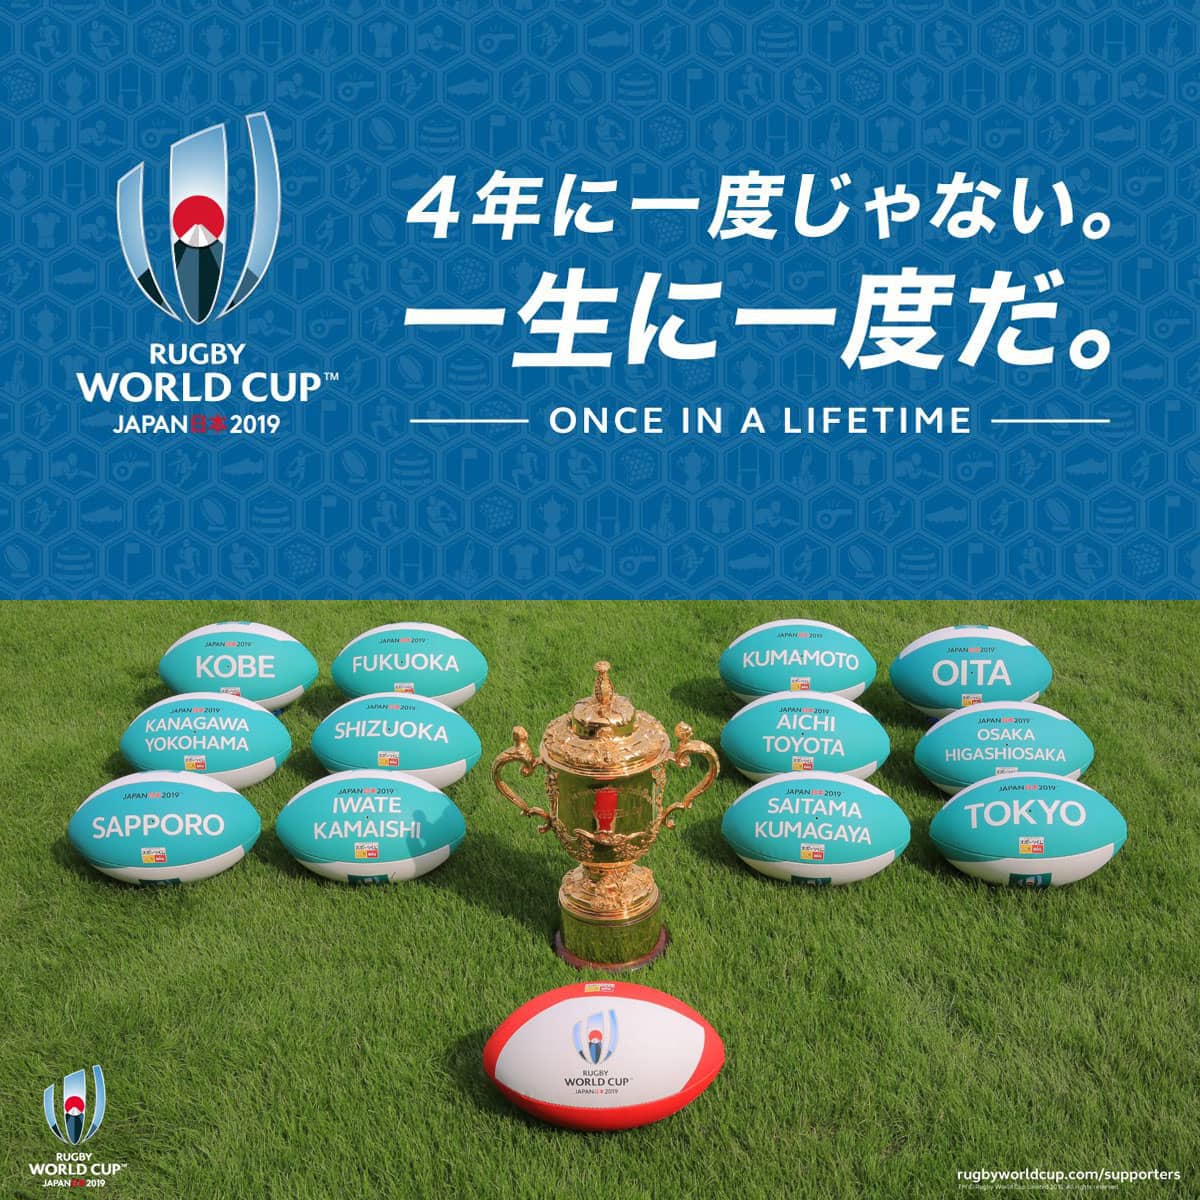 ラグビーワールドカップ日本代表応援企画 淡路ワールドパークonokoro アワタビ